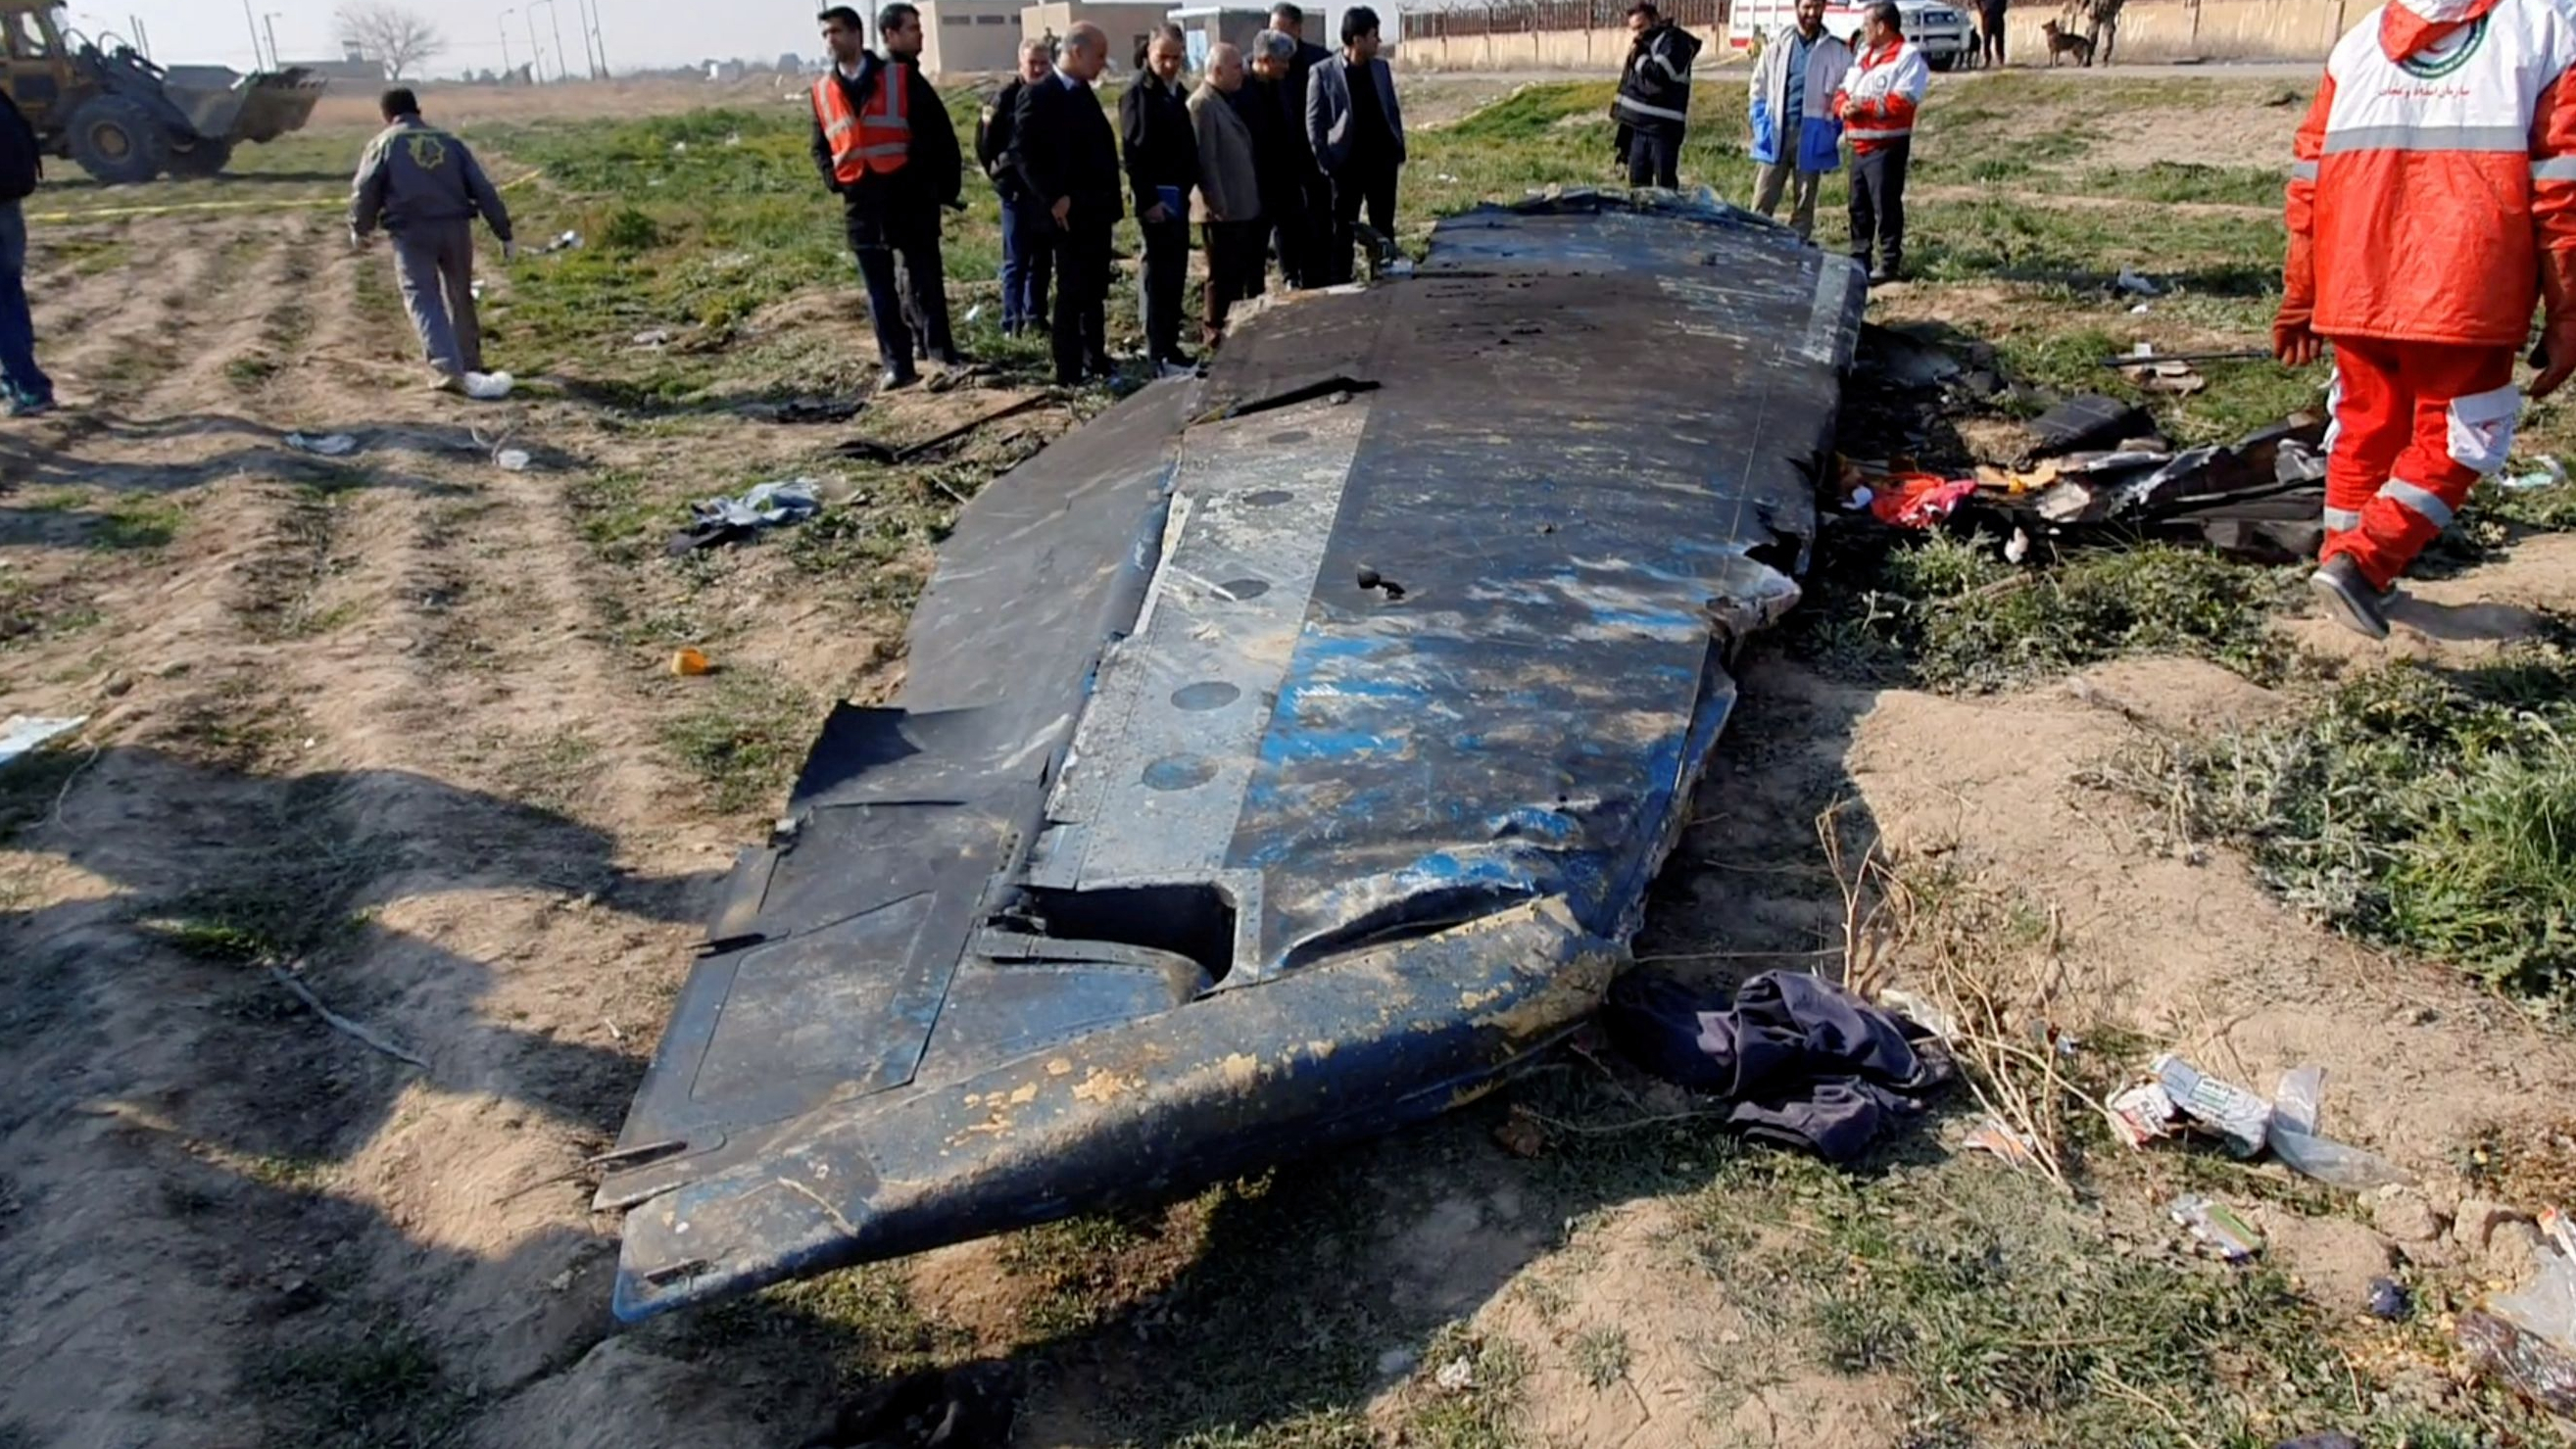 Iran, Ukraine Jointly Decipher Black Box Of Crashed Ukrainian Plane